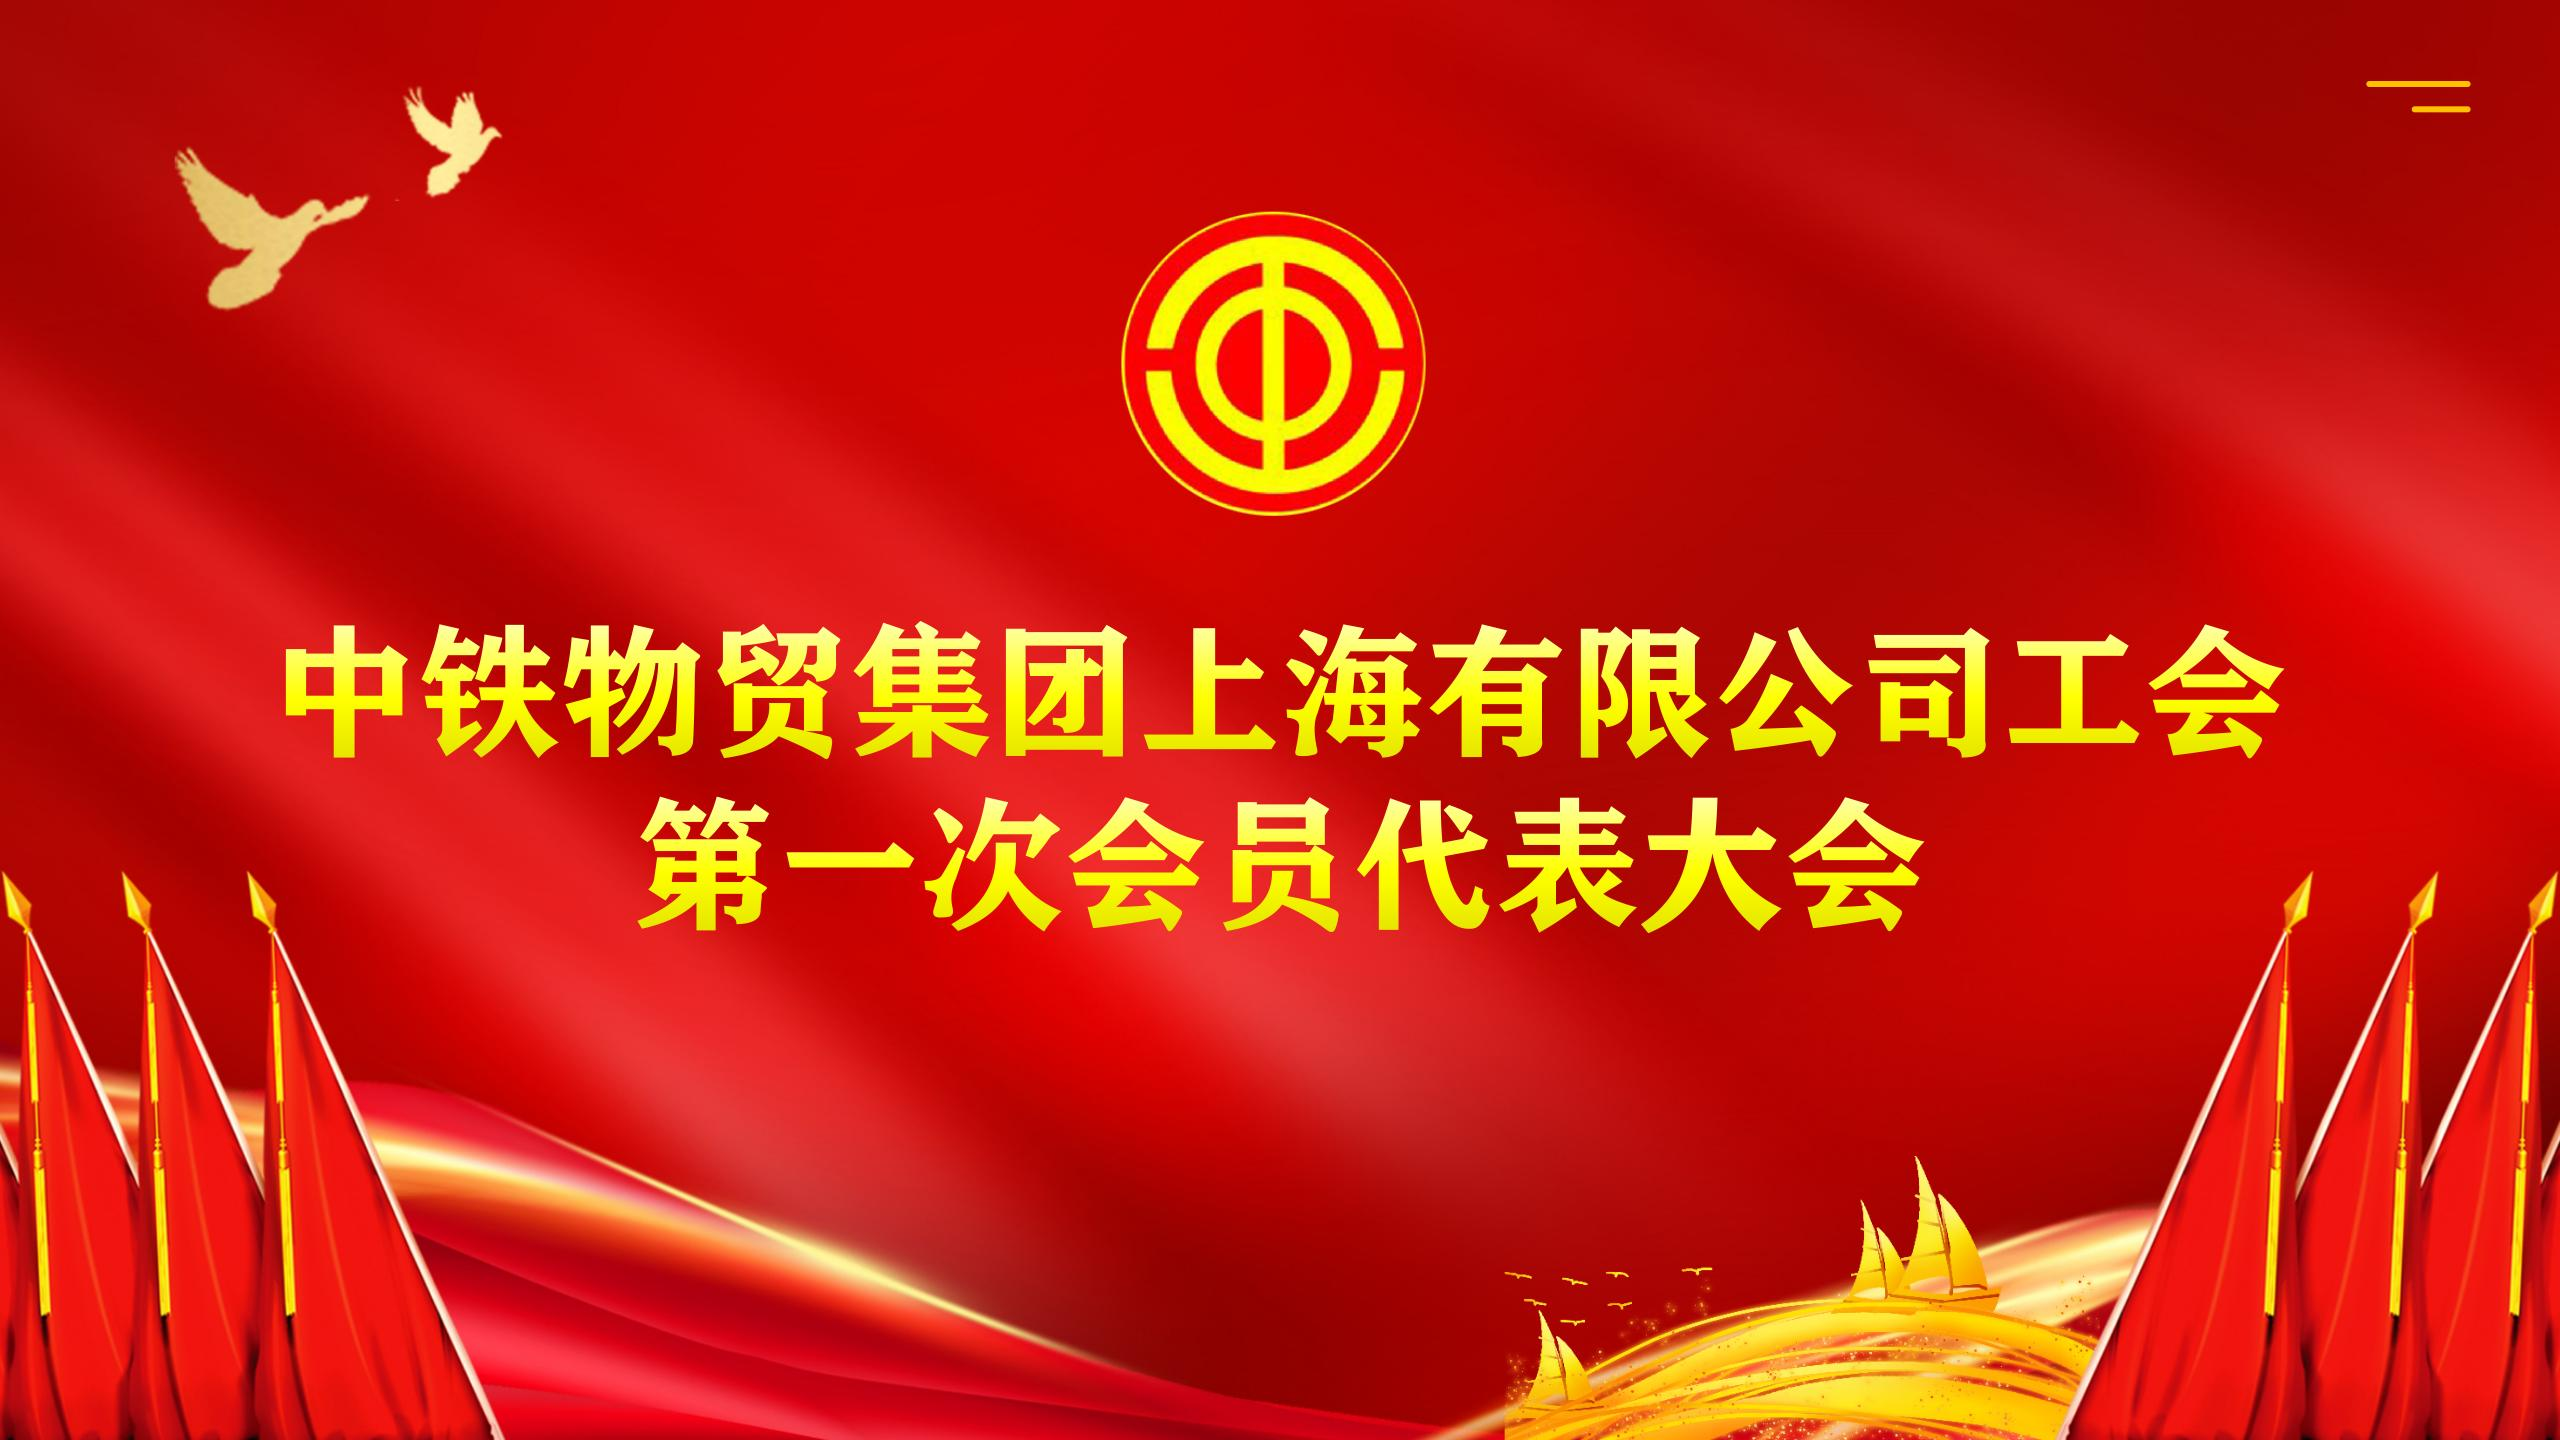 中铁物贸集团上海公司工会第一次会员代表大会在沪胜利召开